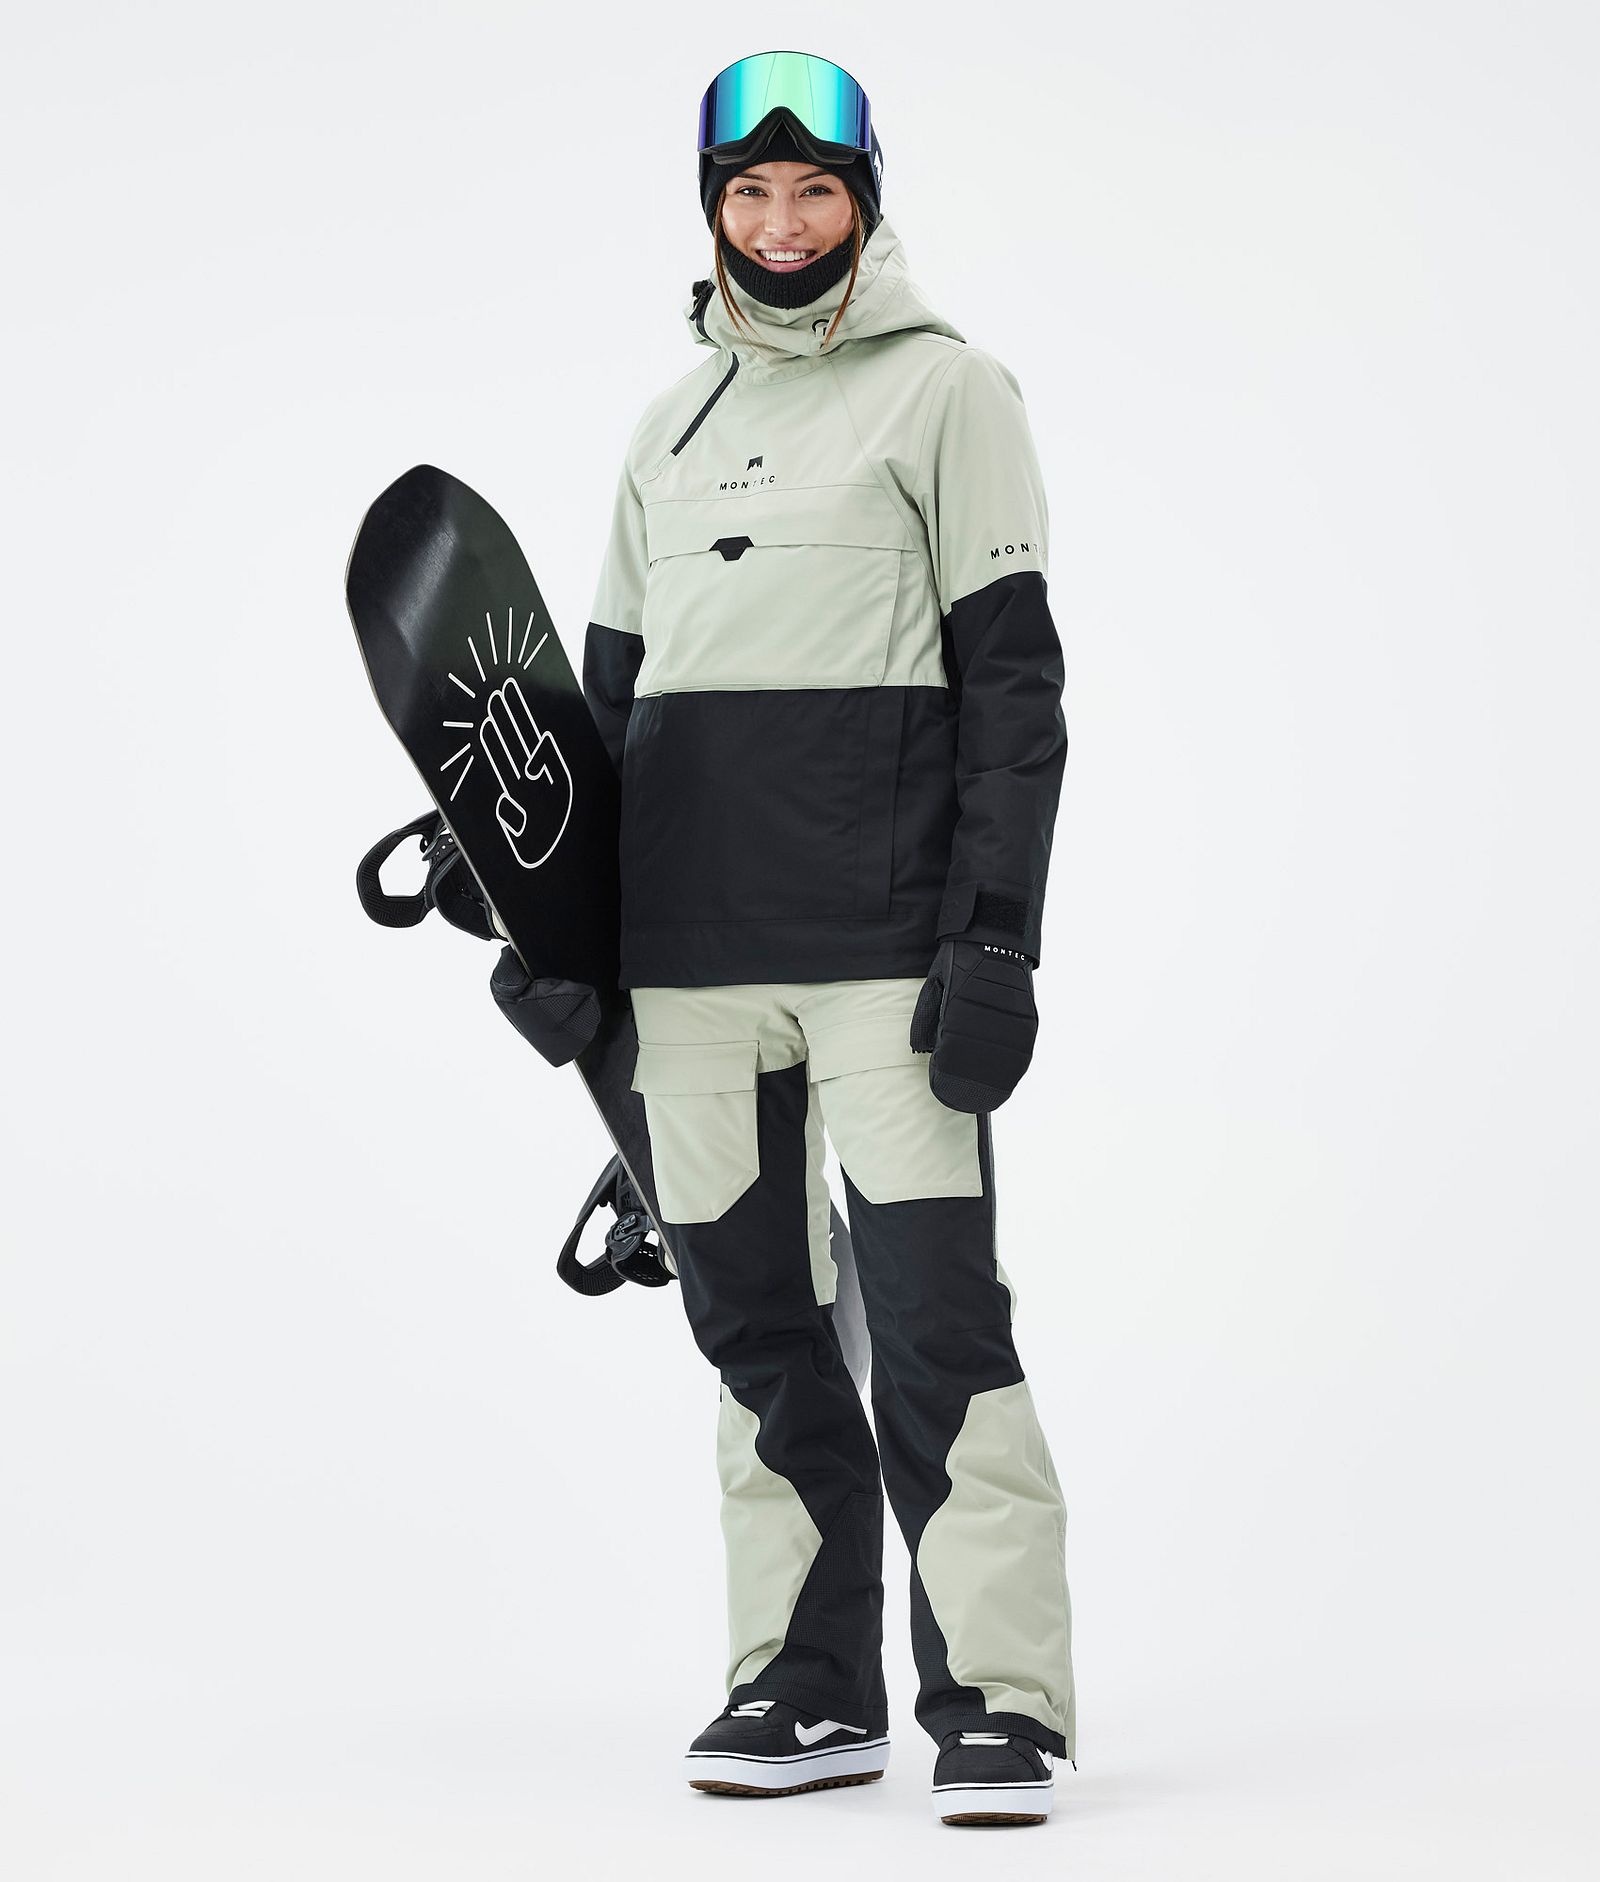 Montec Fawk W Spodnie Snowboardowe Kobiety Soft Green/Black